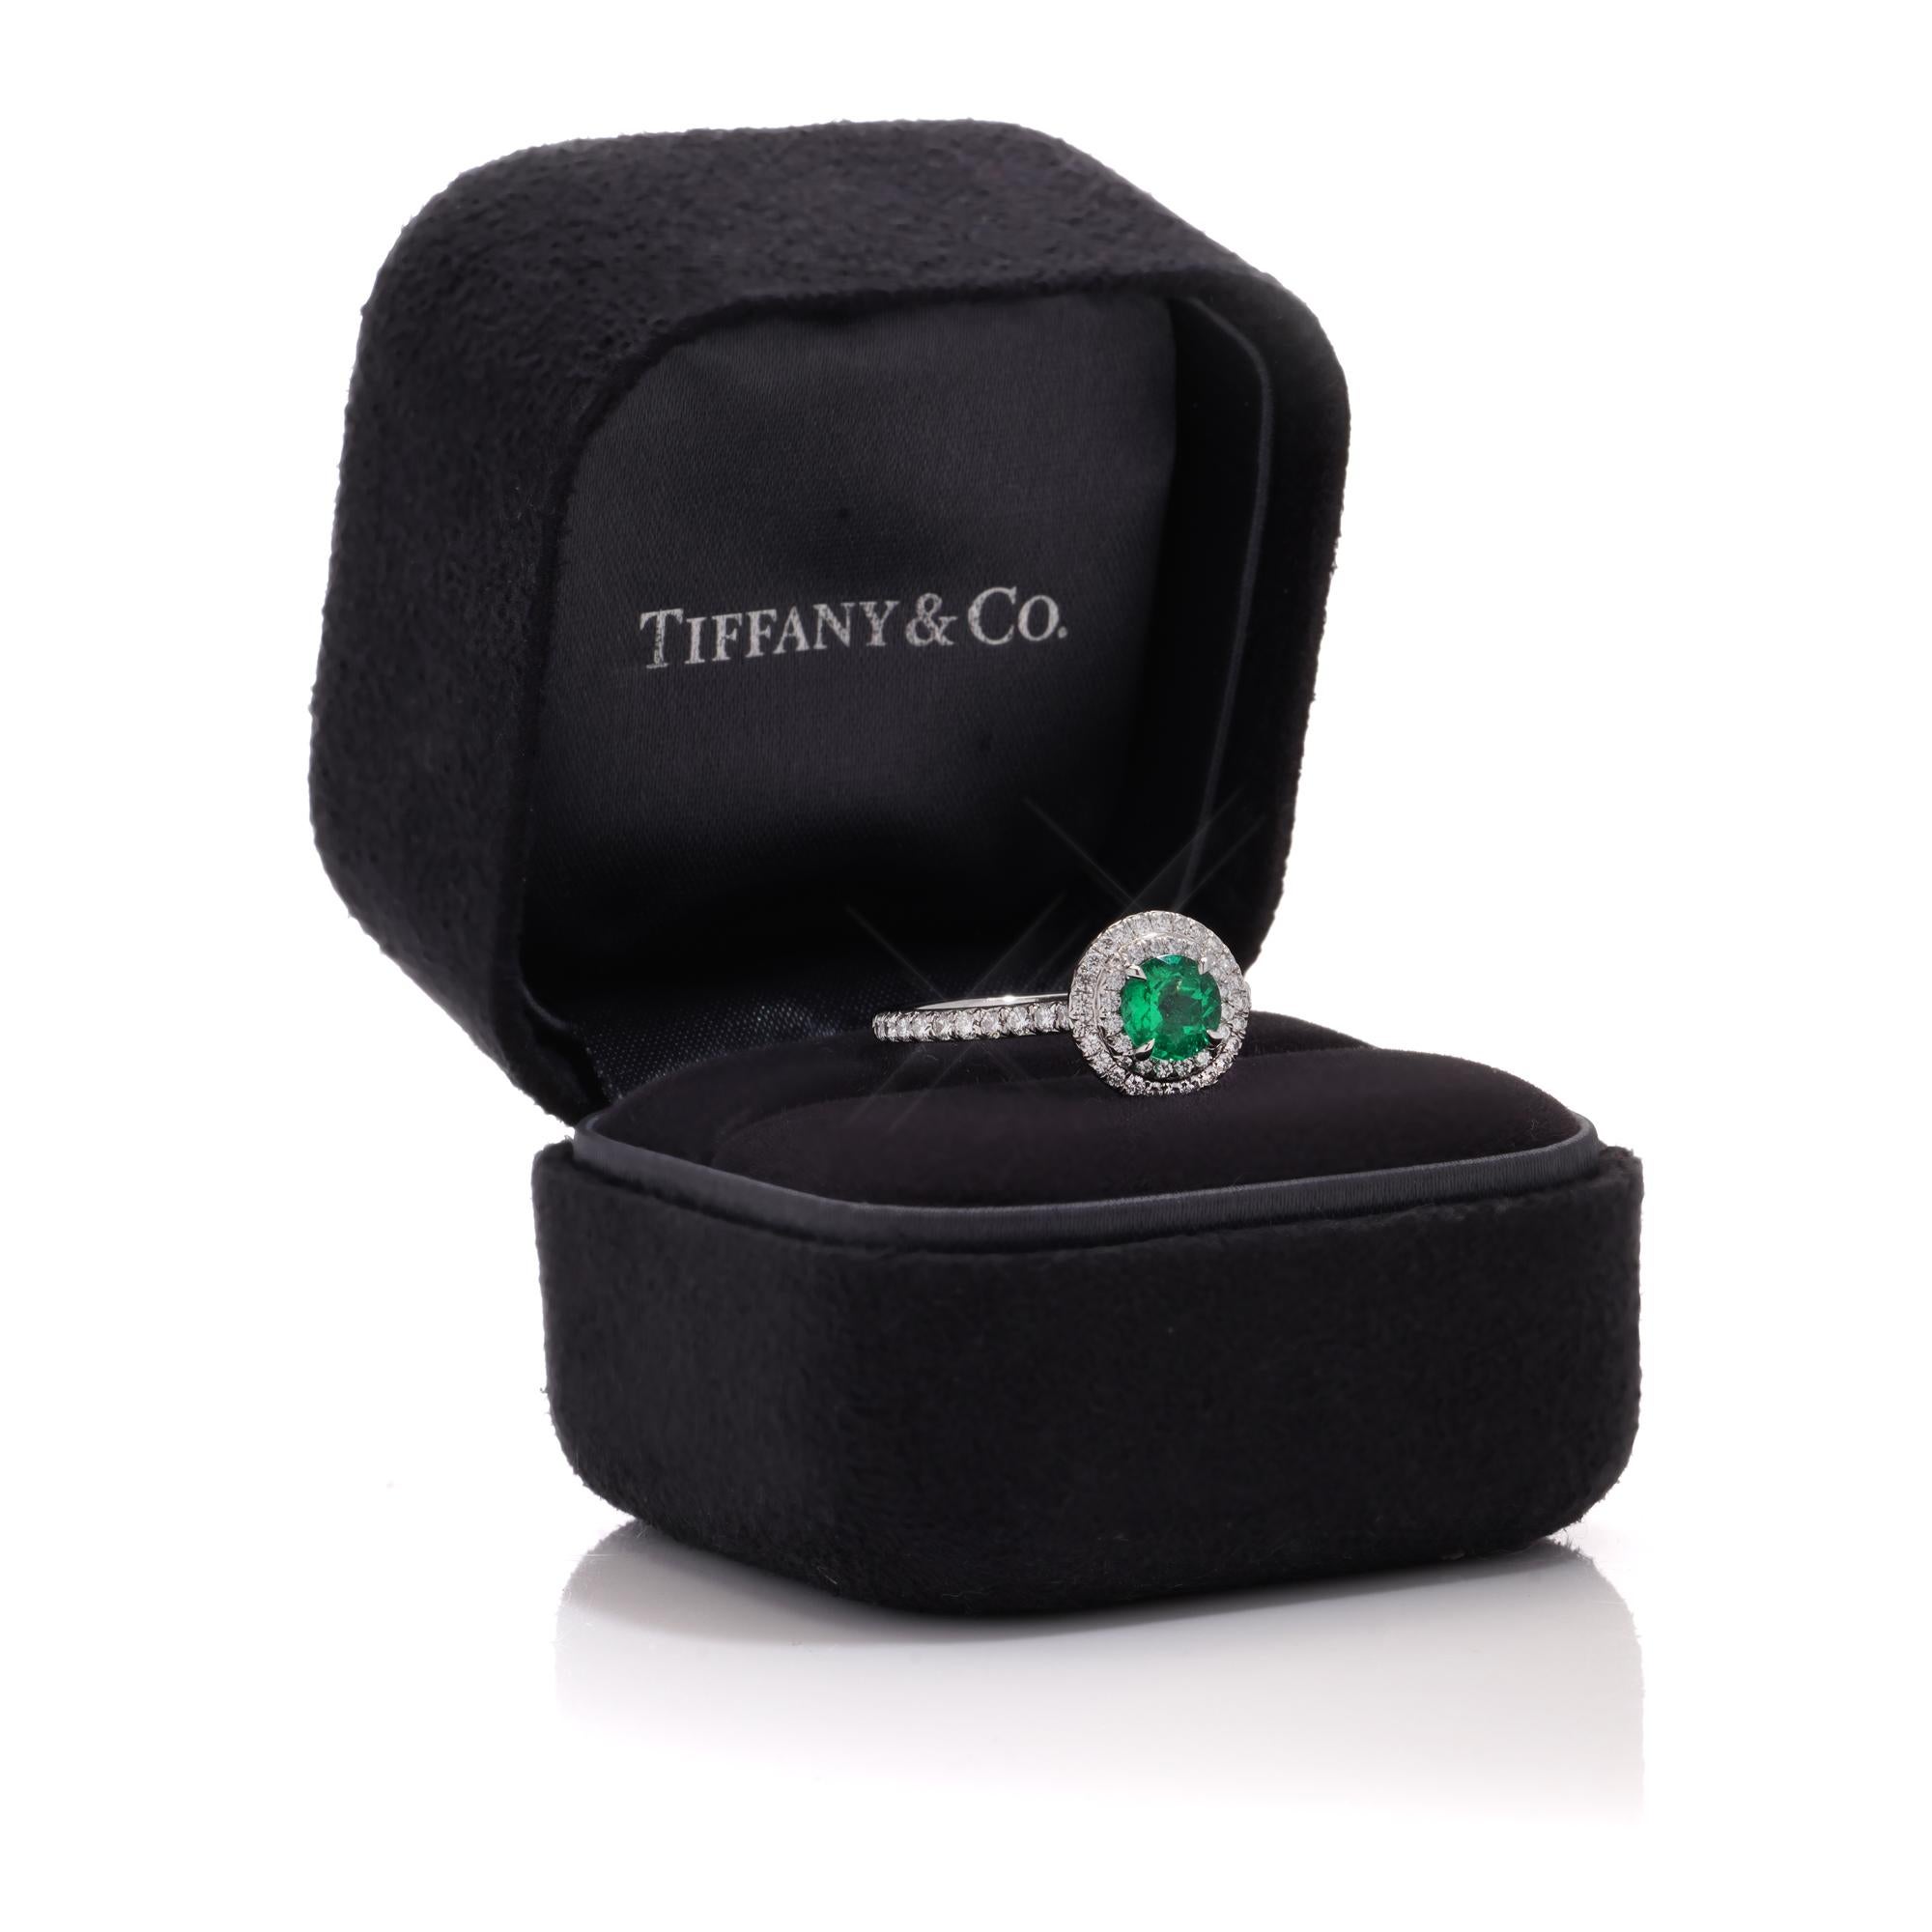 Tiffany & Co Damen Platin Smaragd und Diamant Ring.
Schöpfer: Tiffany & Co.
Vollständig gepunzt.

Ungefähr. Abmessungen -
Größe: 2,7 x 2 x 1 cm
Fingergröße (UK) = N (US) = 7 (EU) = 54
Gewicht: 4.28 Gramm

Smaragd - 
Größe: 0,60 Karat
Schliff: Runder